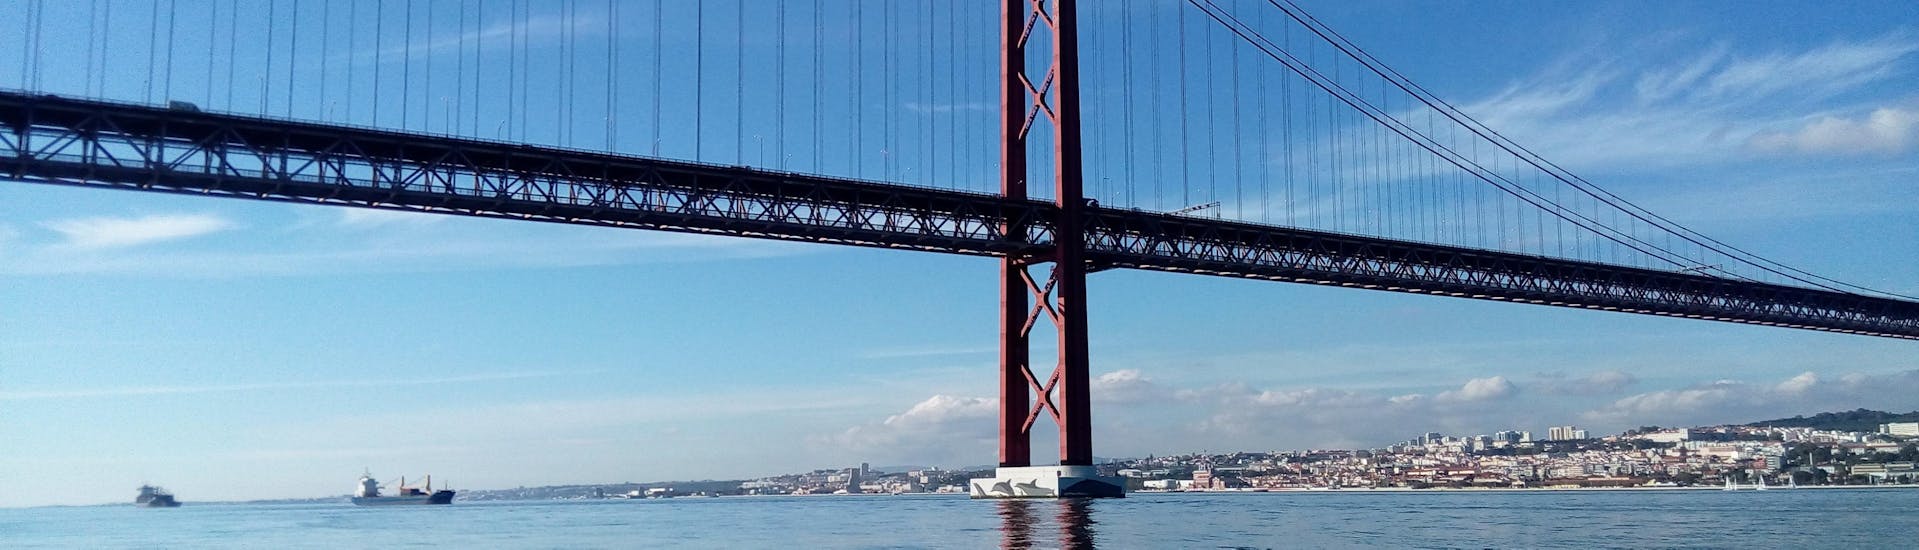 Le majestueux Ponte Vasco da Gama peut être admiré lors de cette excursion en bateau à voile sur le Tage, y compris le Ponte Vasco da Gama et Lisbonne en bateau.